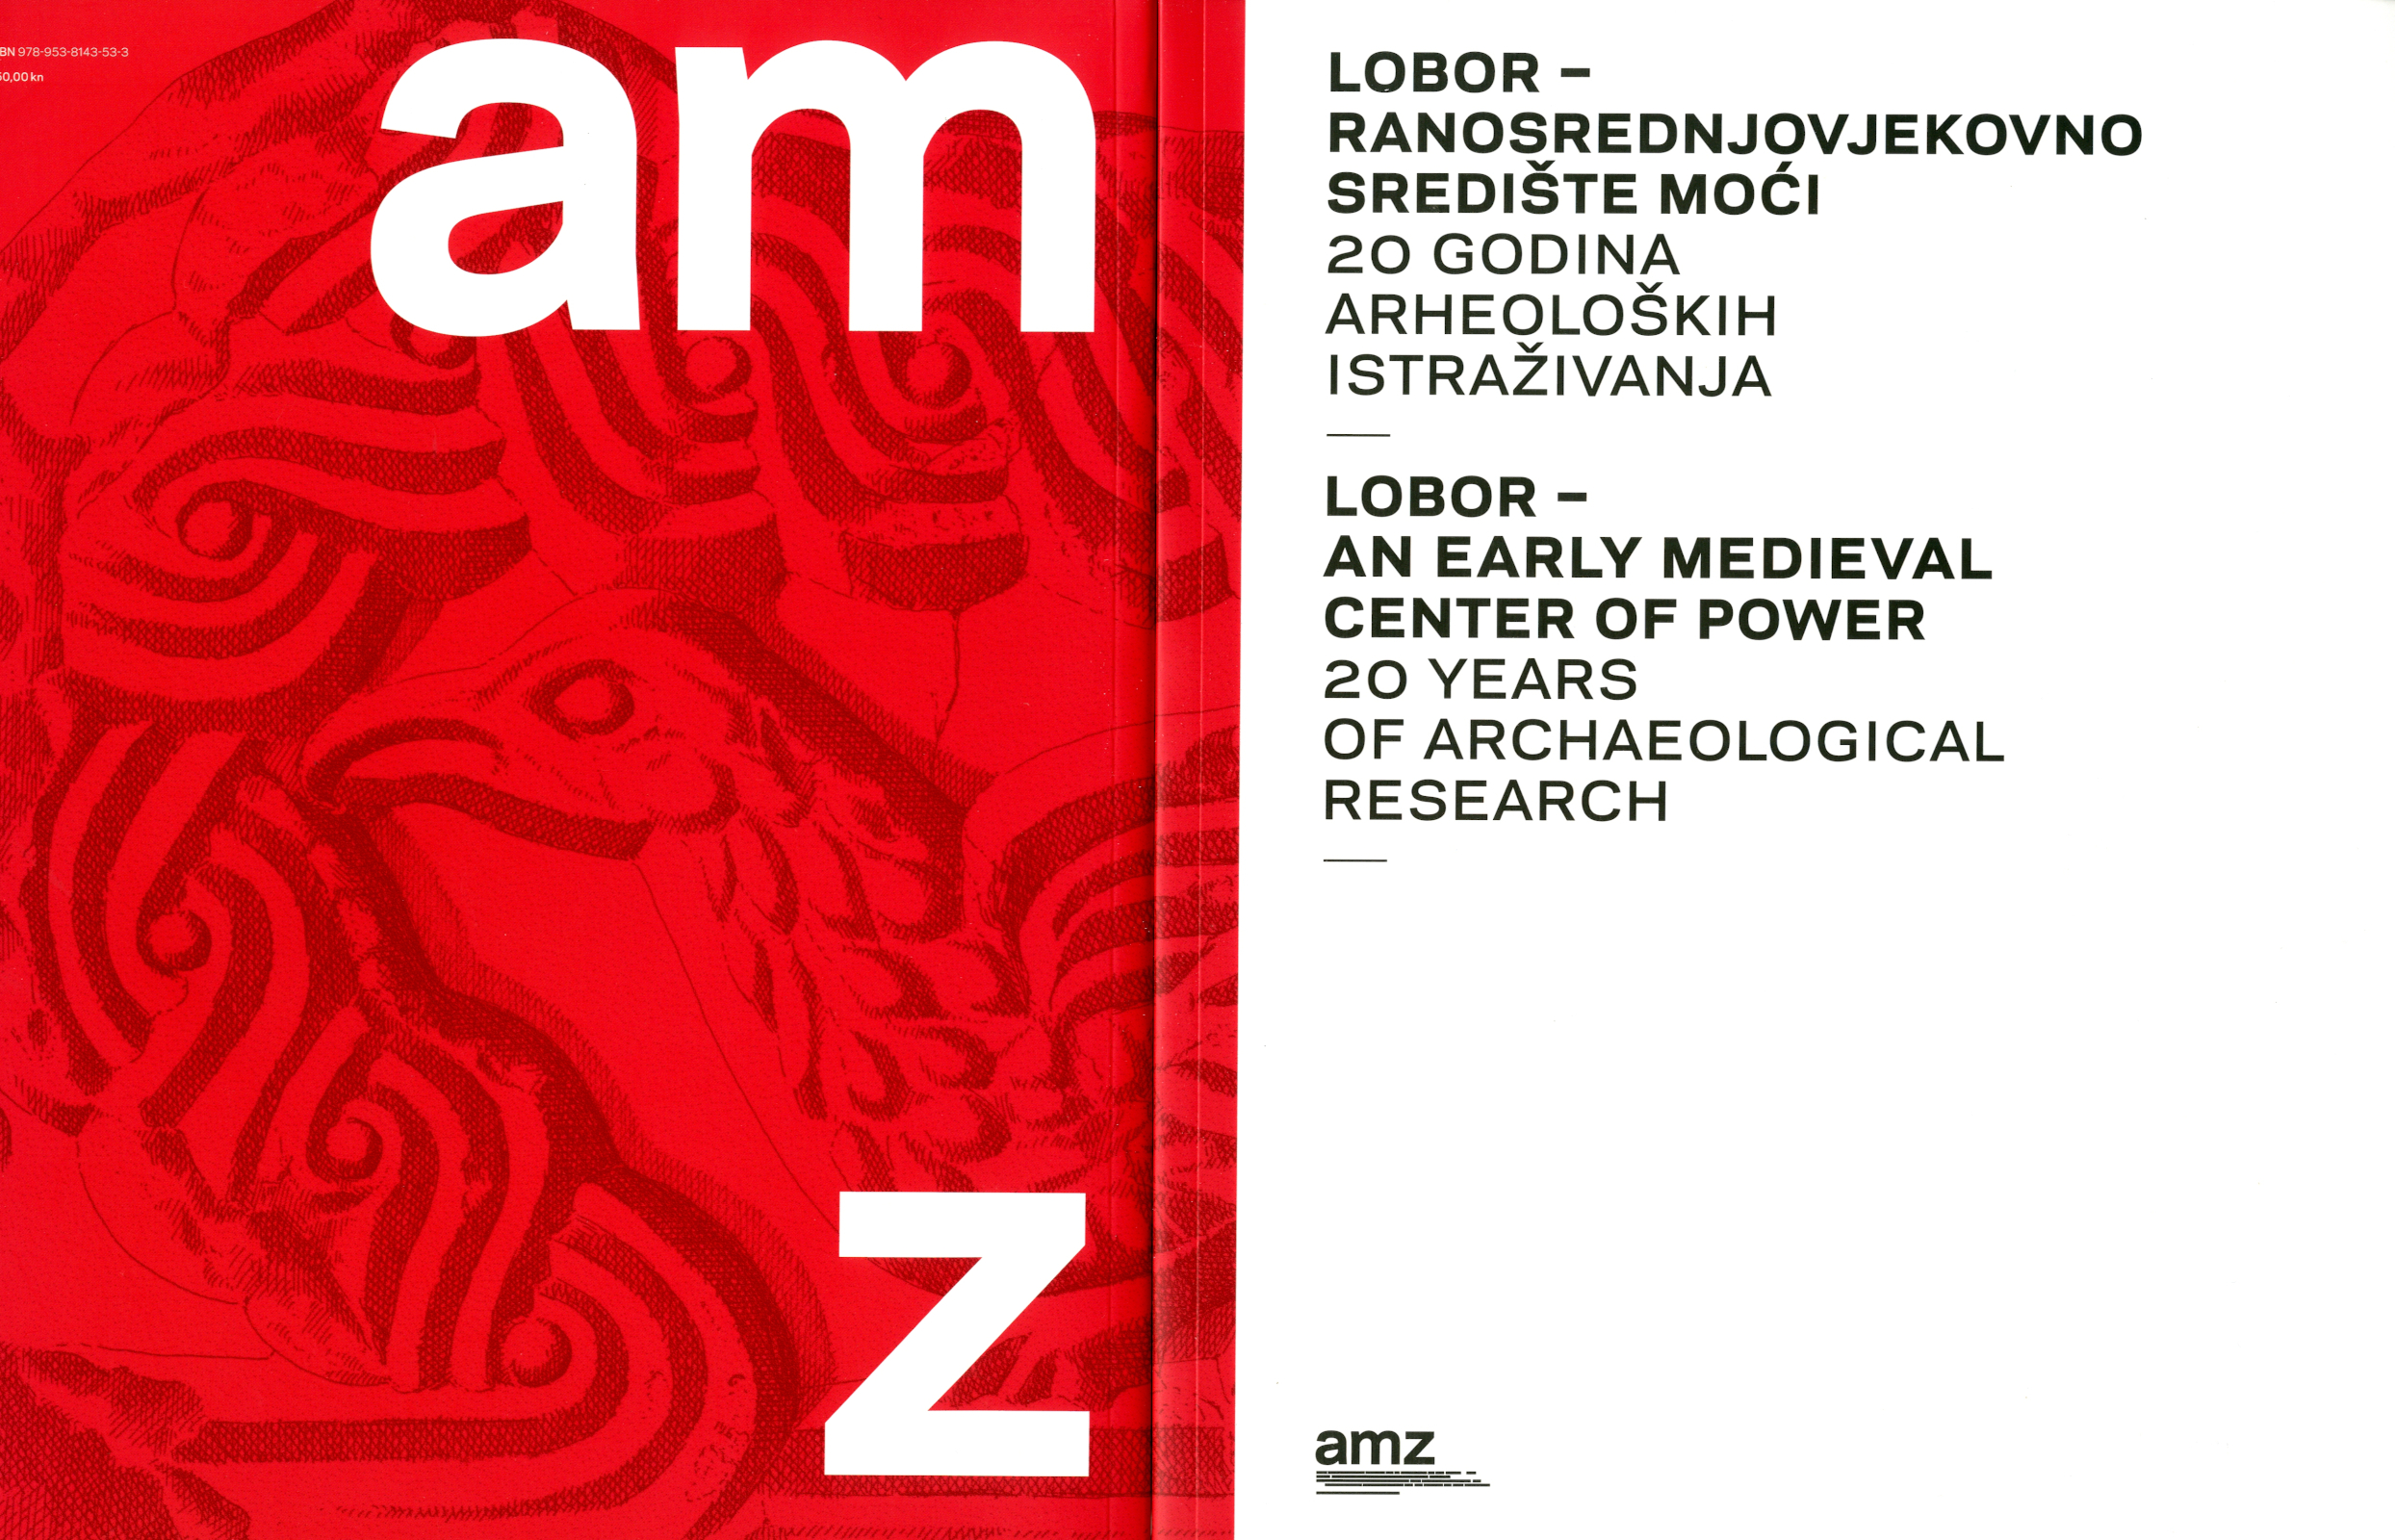 Katalog izložbe “Lobor – ranosrednjovjekovno središte moći, 20 godina arheoloških istraživanja”